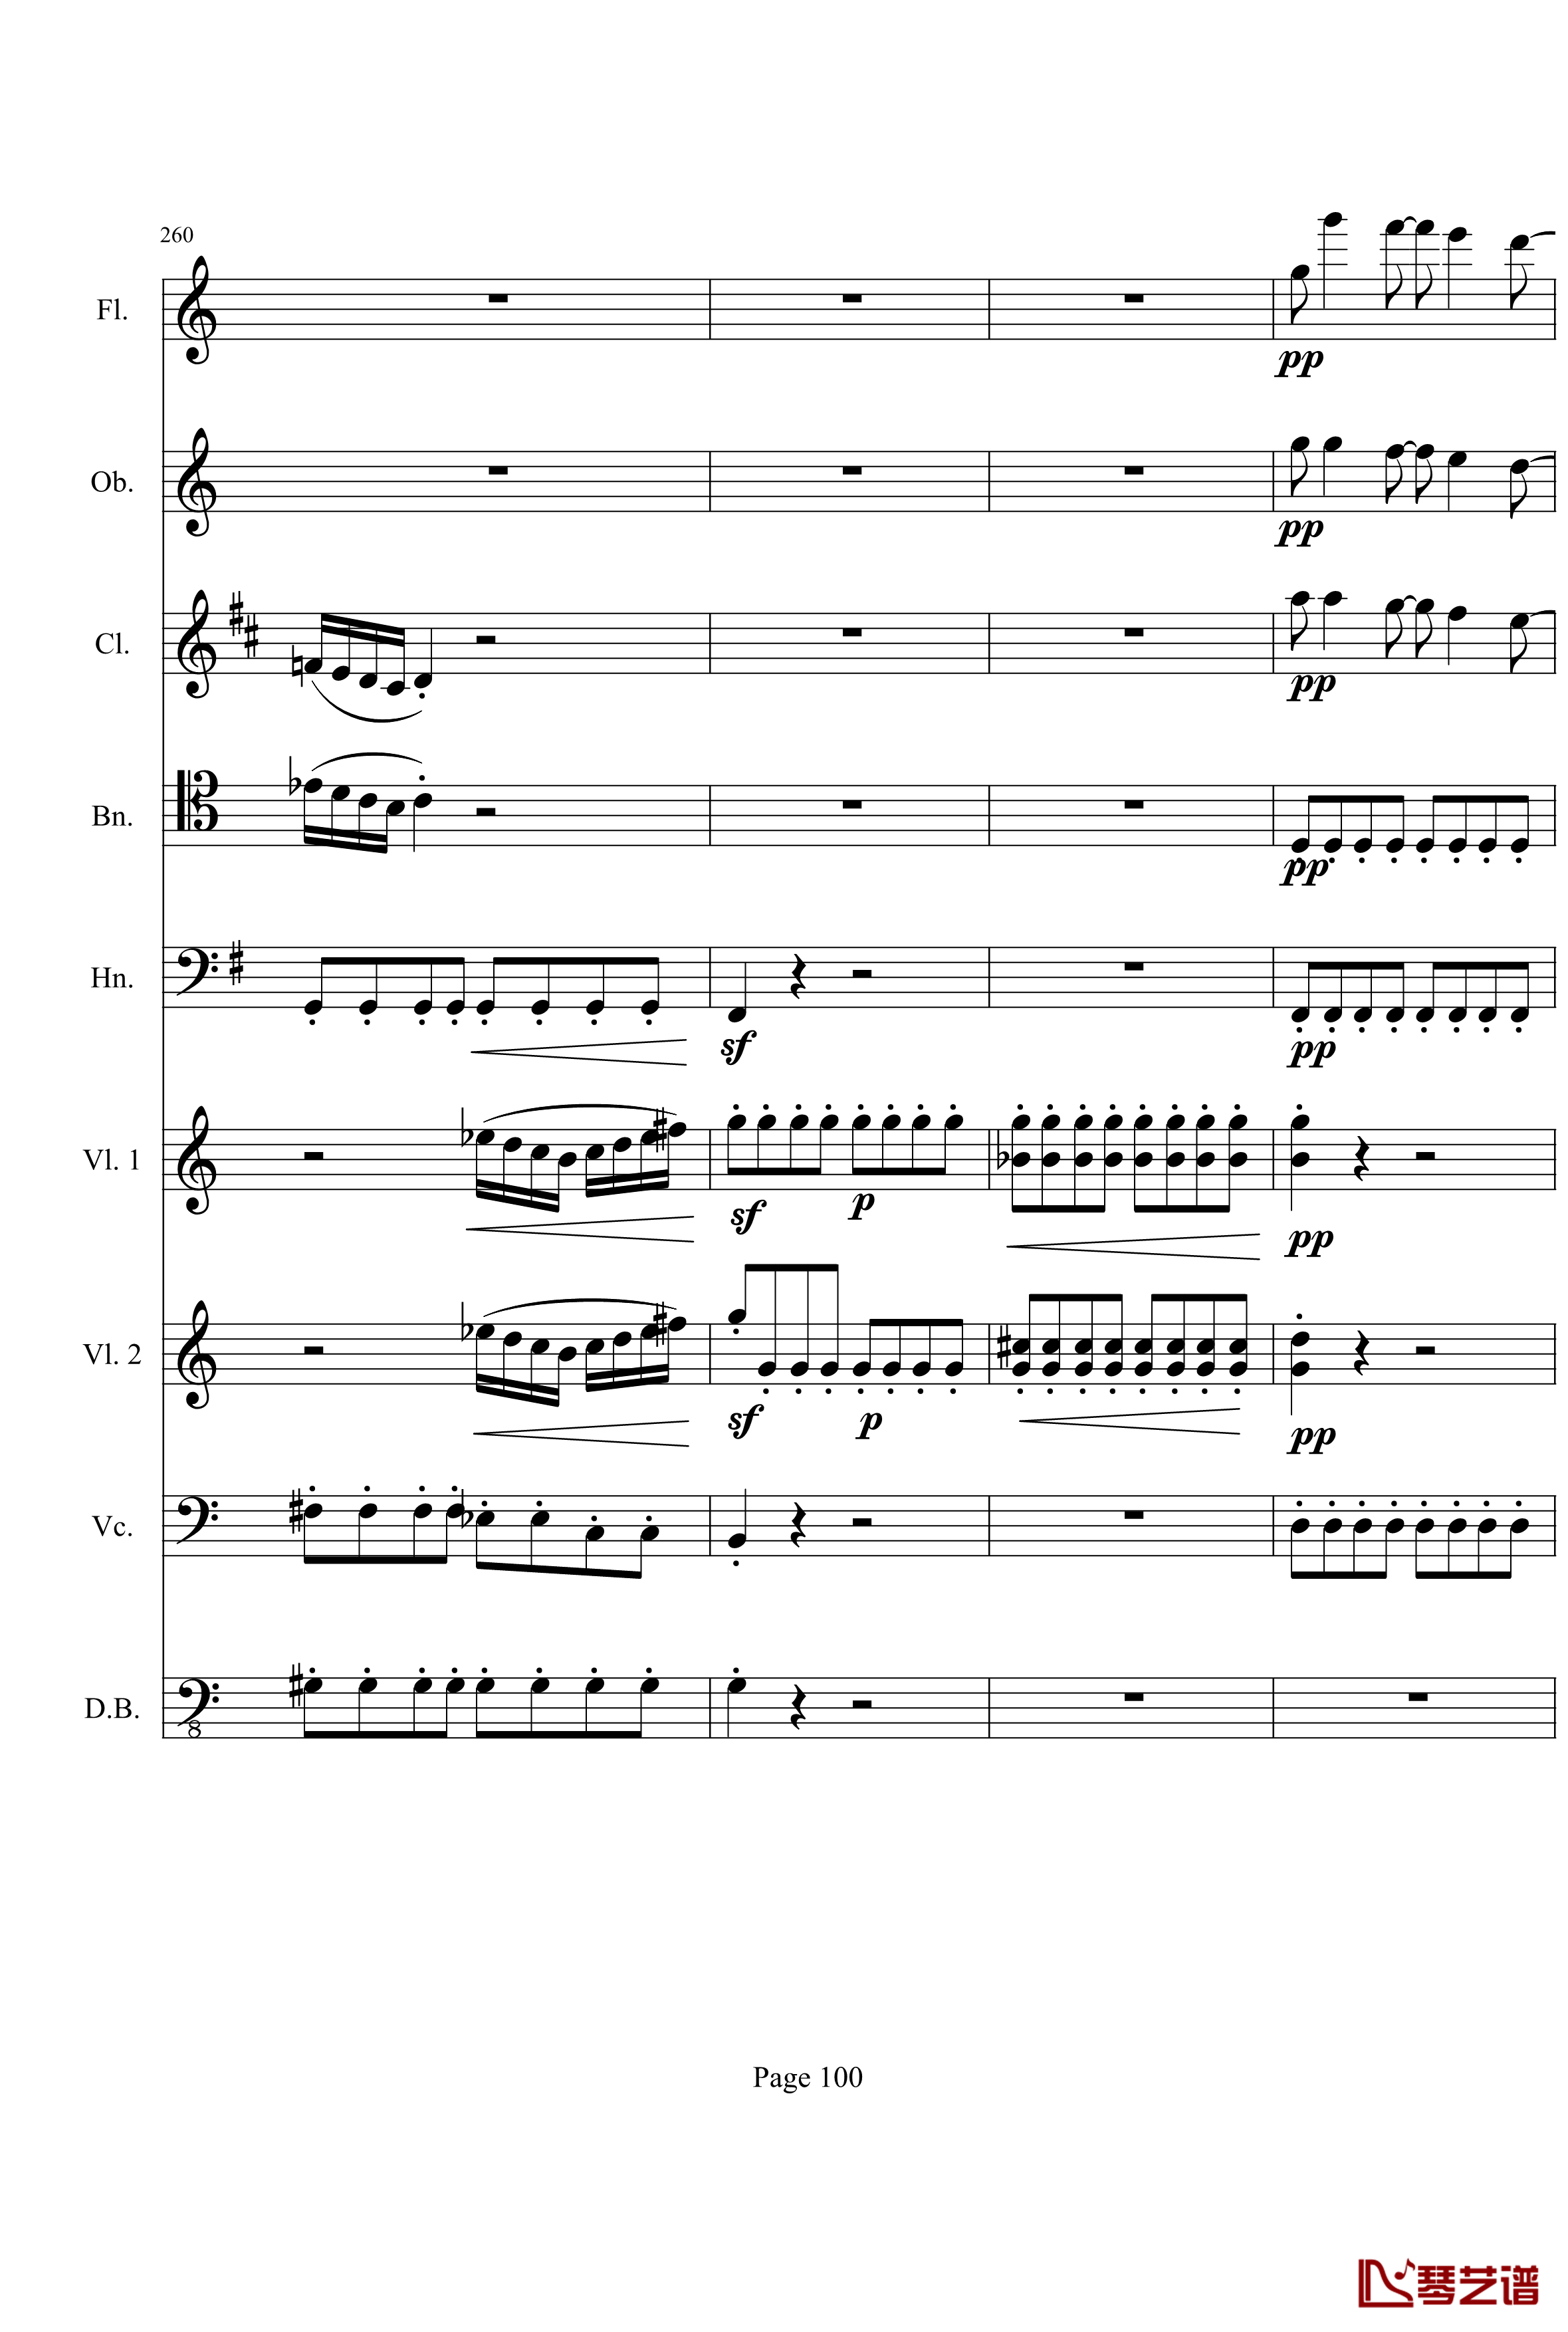 奏鸣曲之交响钢琴谱-第21-Ⅰ-贝多芬-beethoven100